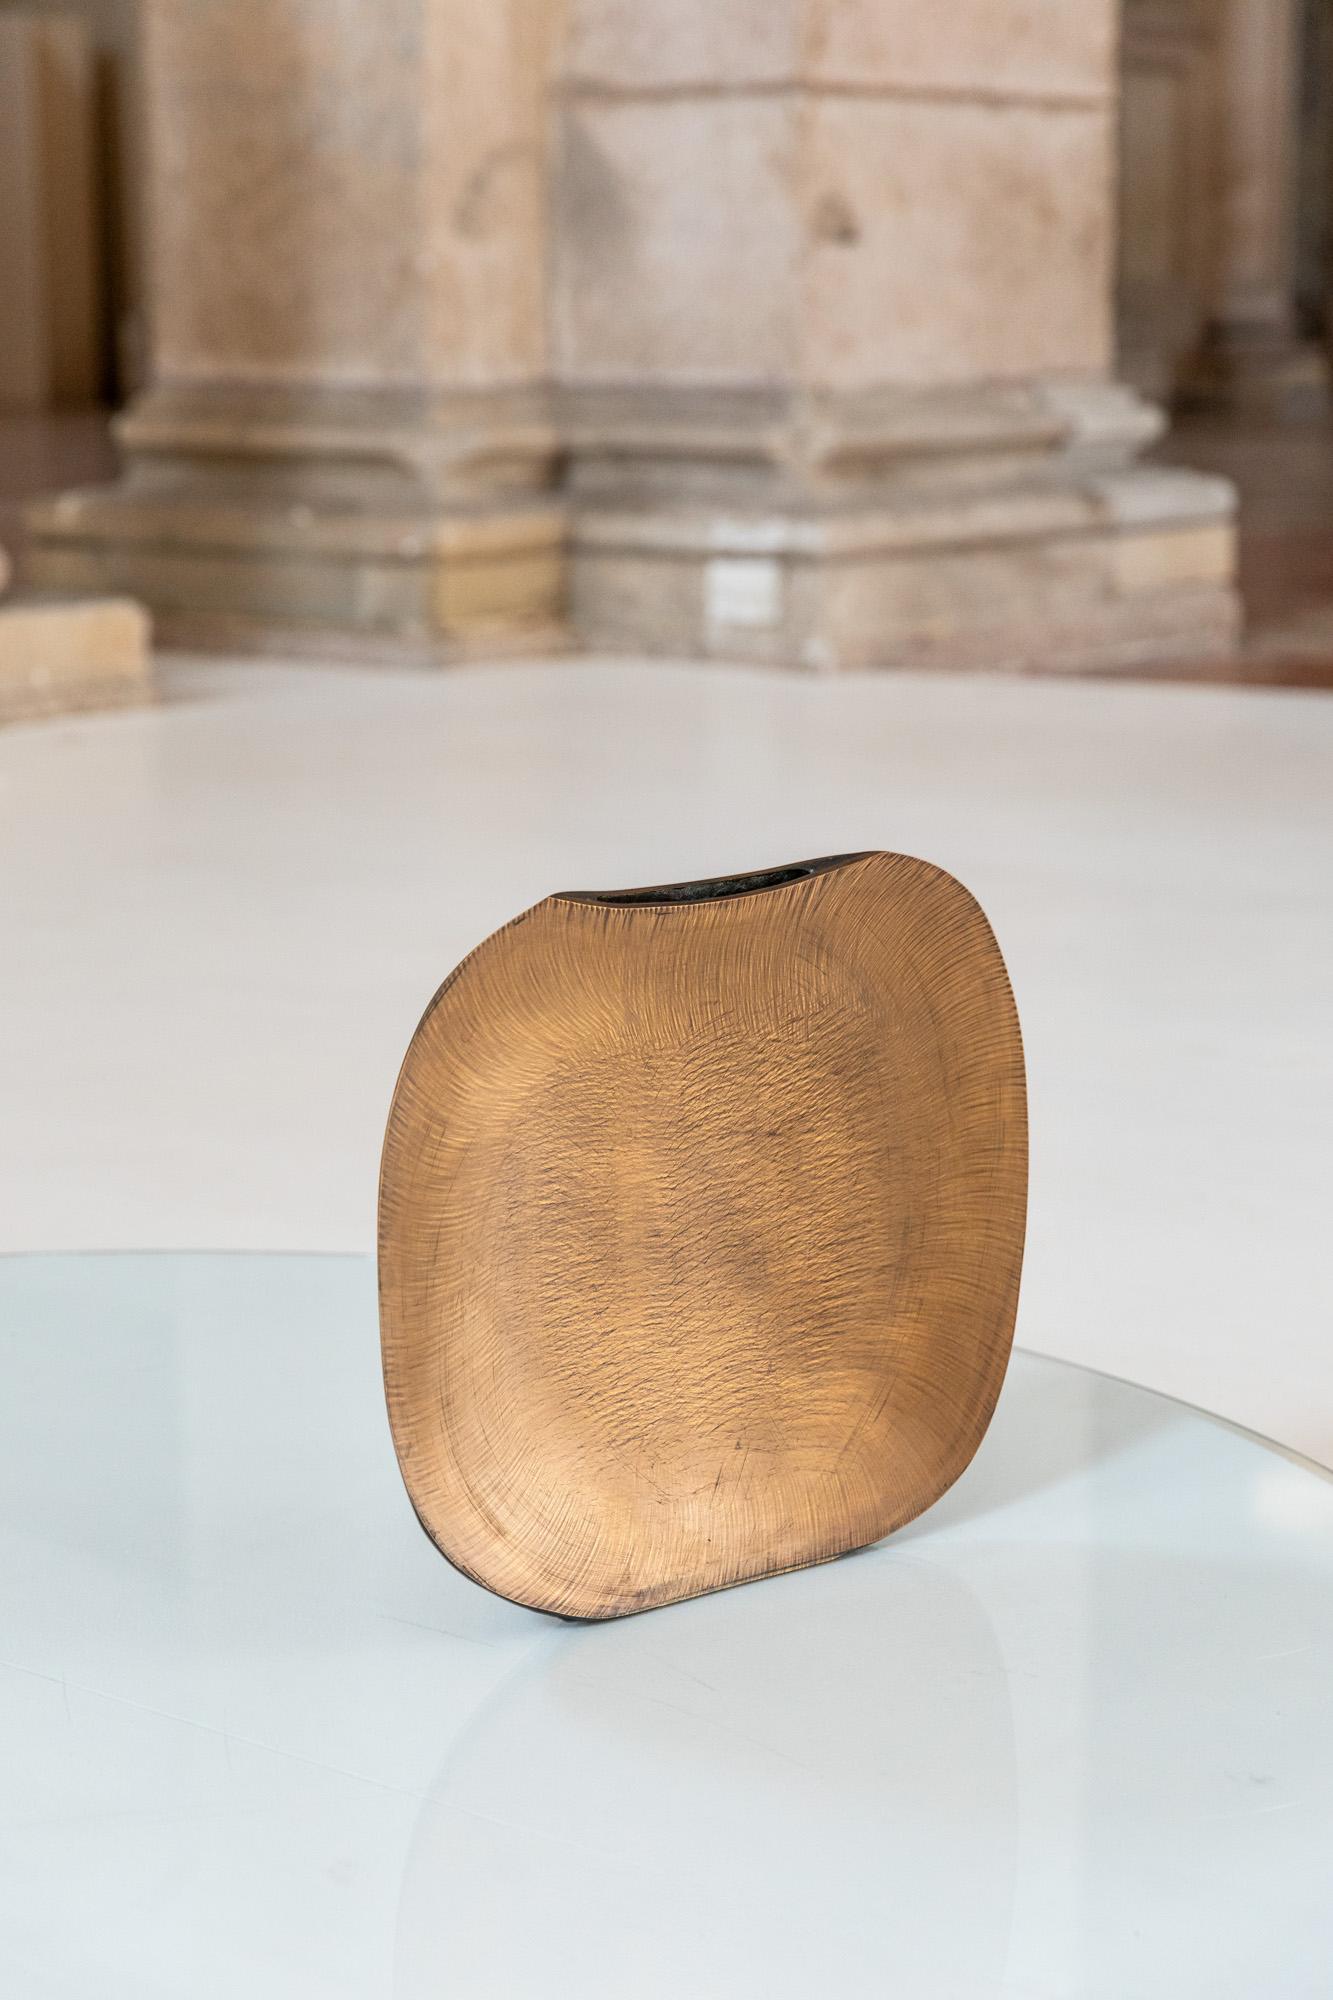 Seltene Vase aus patinierter Goldbronze, die Lorenzo Burchiellaro zugeschrieben wird, mit eigentümlichen  konkave Form
Italien, 1970 ca.

Lorenzo Burchiellaro ist ein italienischer Designer und Bildhauer. Sein bevorzugtes MATERIAL waren alle Arten